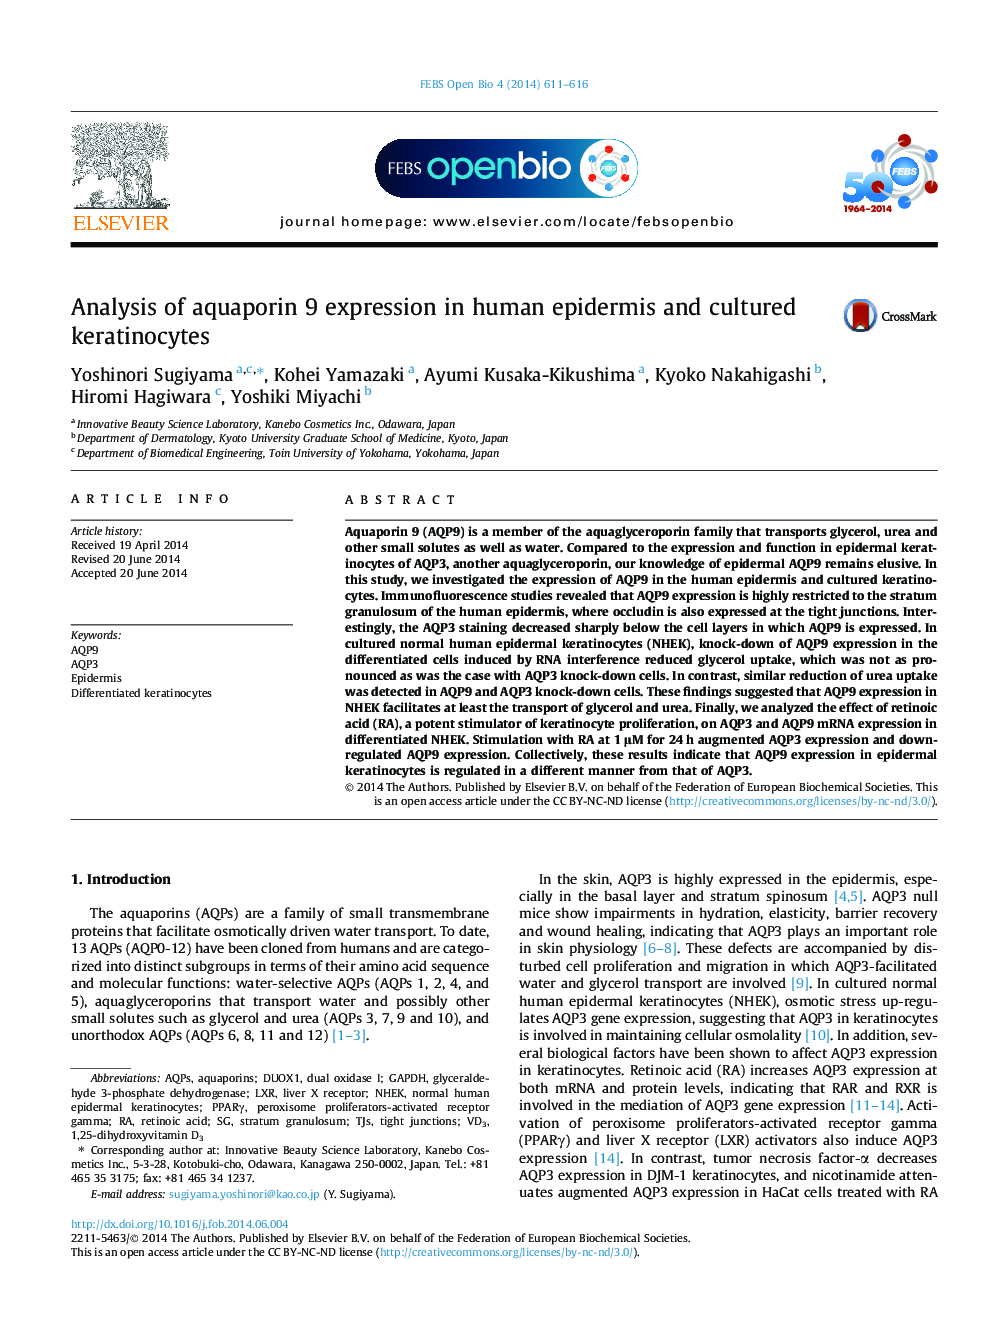 تجزیه و تحلیل بیان آکوپورین 9 در اپیدرم انسان و کشت کراتینوسیت ها 